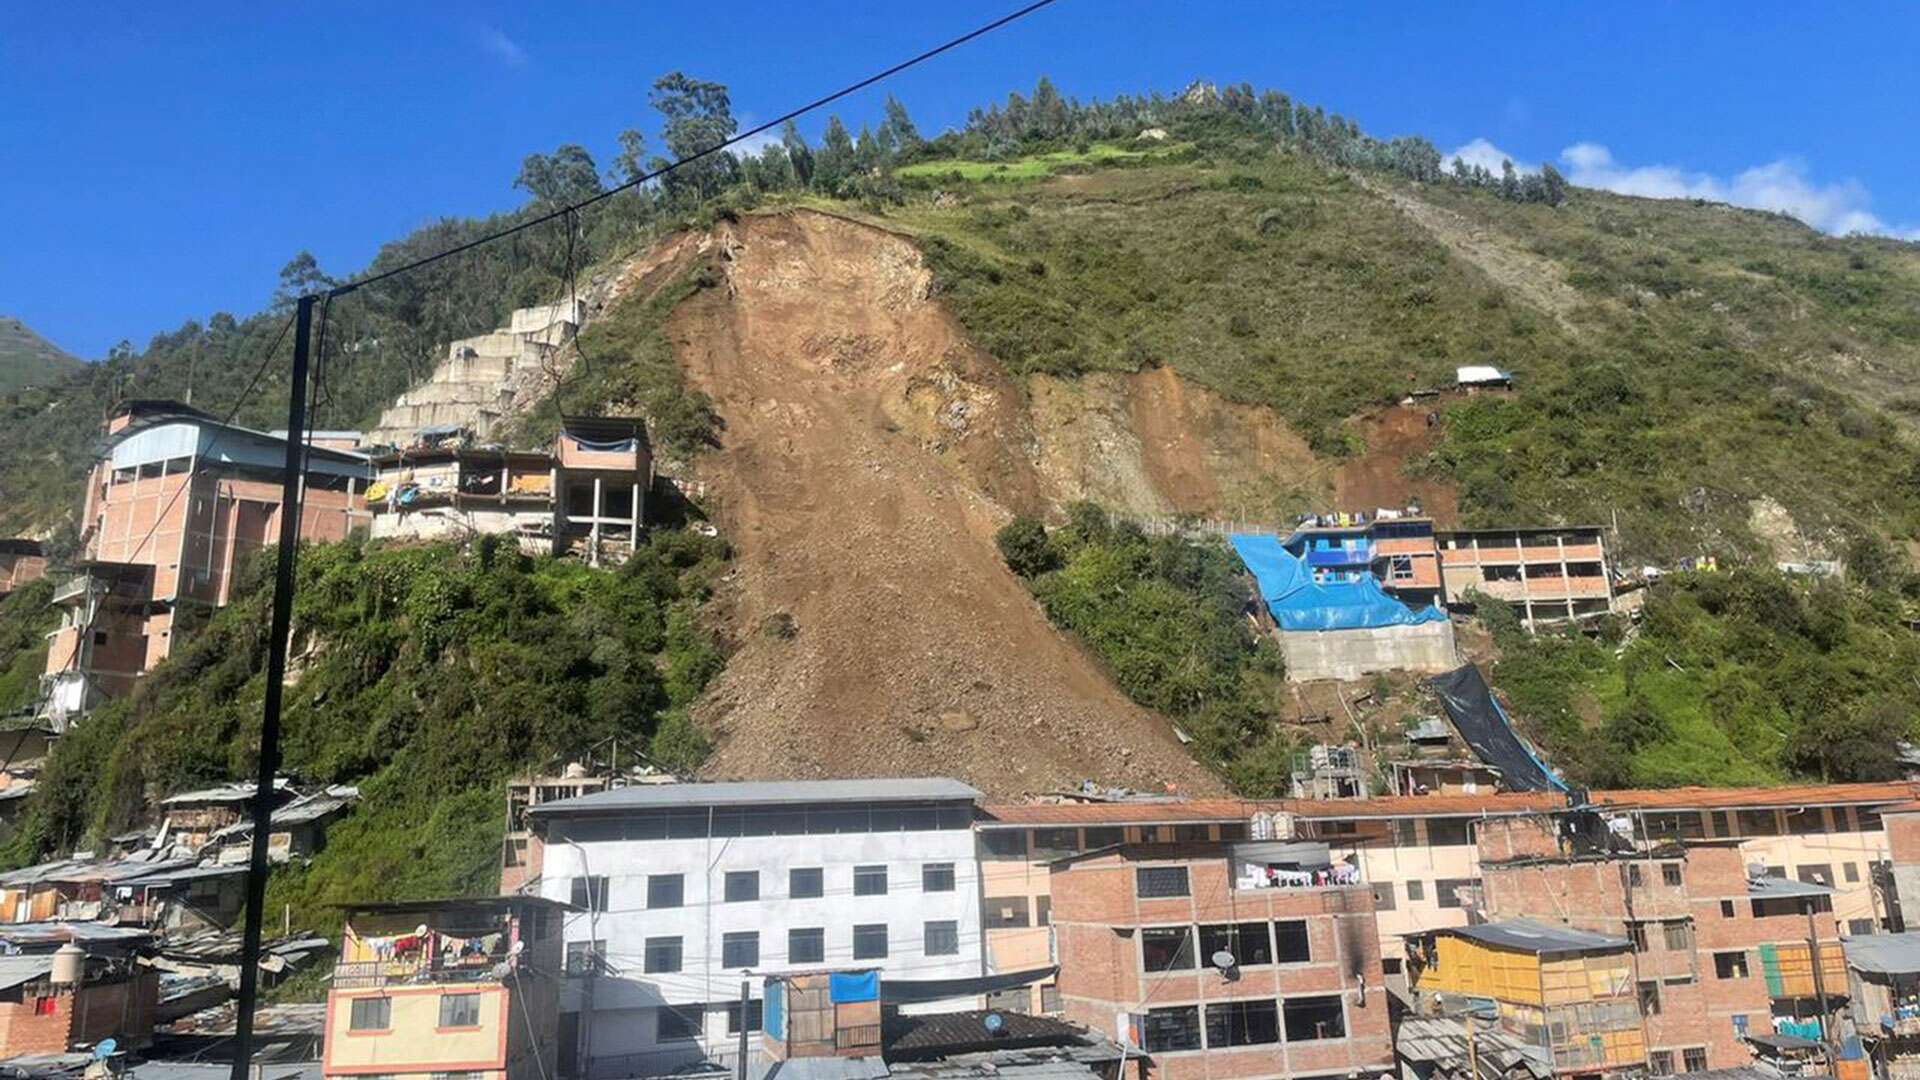 Peste 60 de case, îngropate de o alunecare de teren în Peru. Mai multe persoane sunt dispărute/ foto: usnews.com